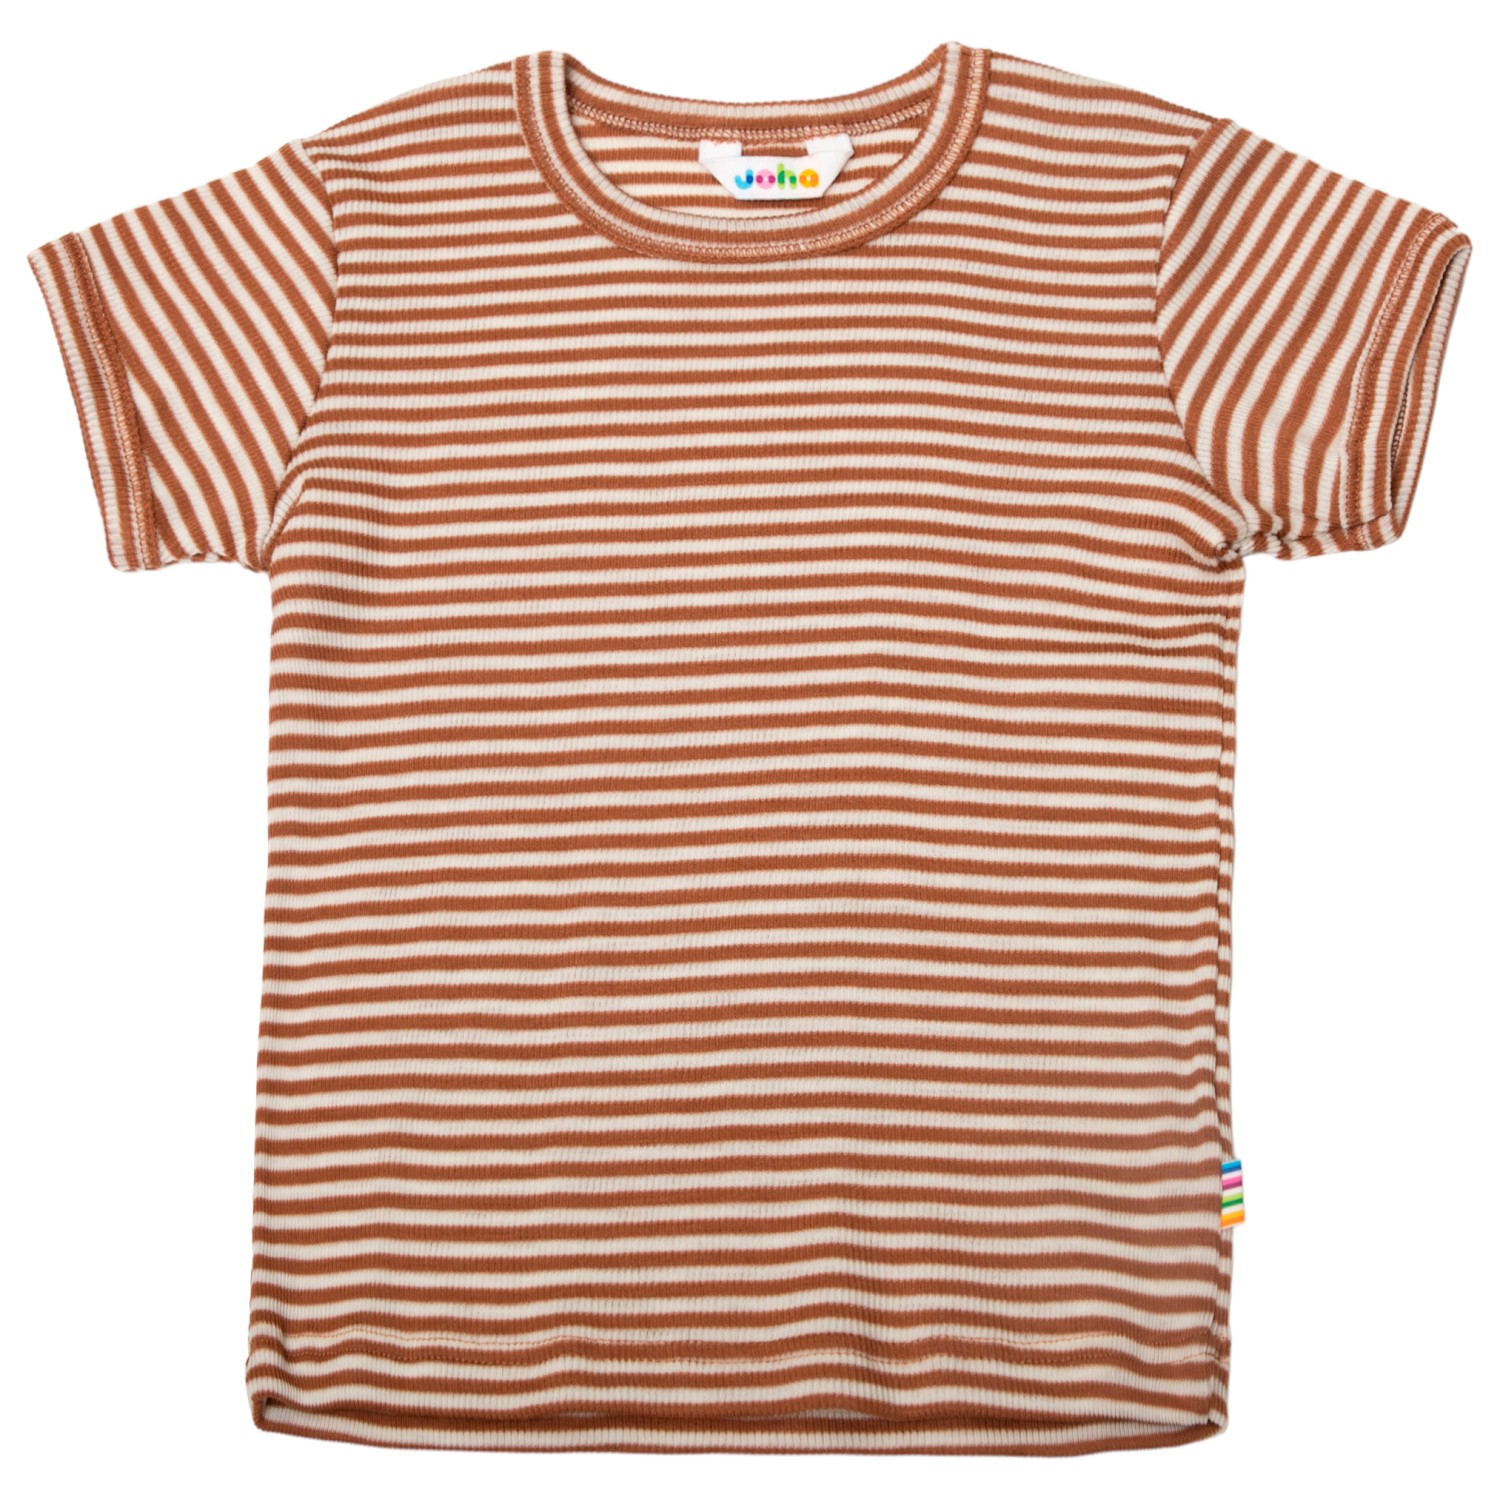 Рубашка из мериноса Joha Kid's Blouse S/S 17285, коричневый цена и фото